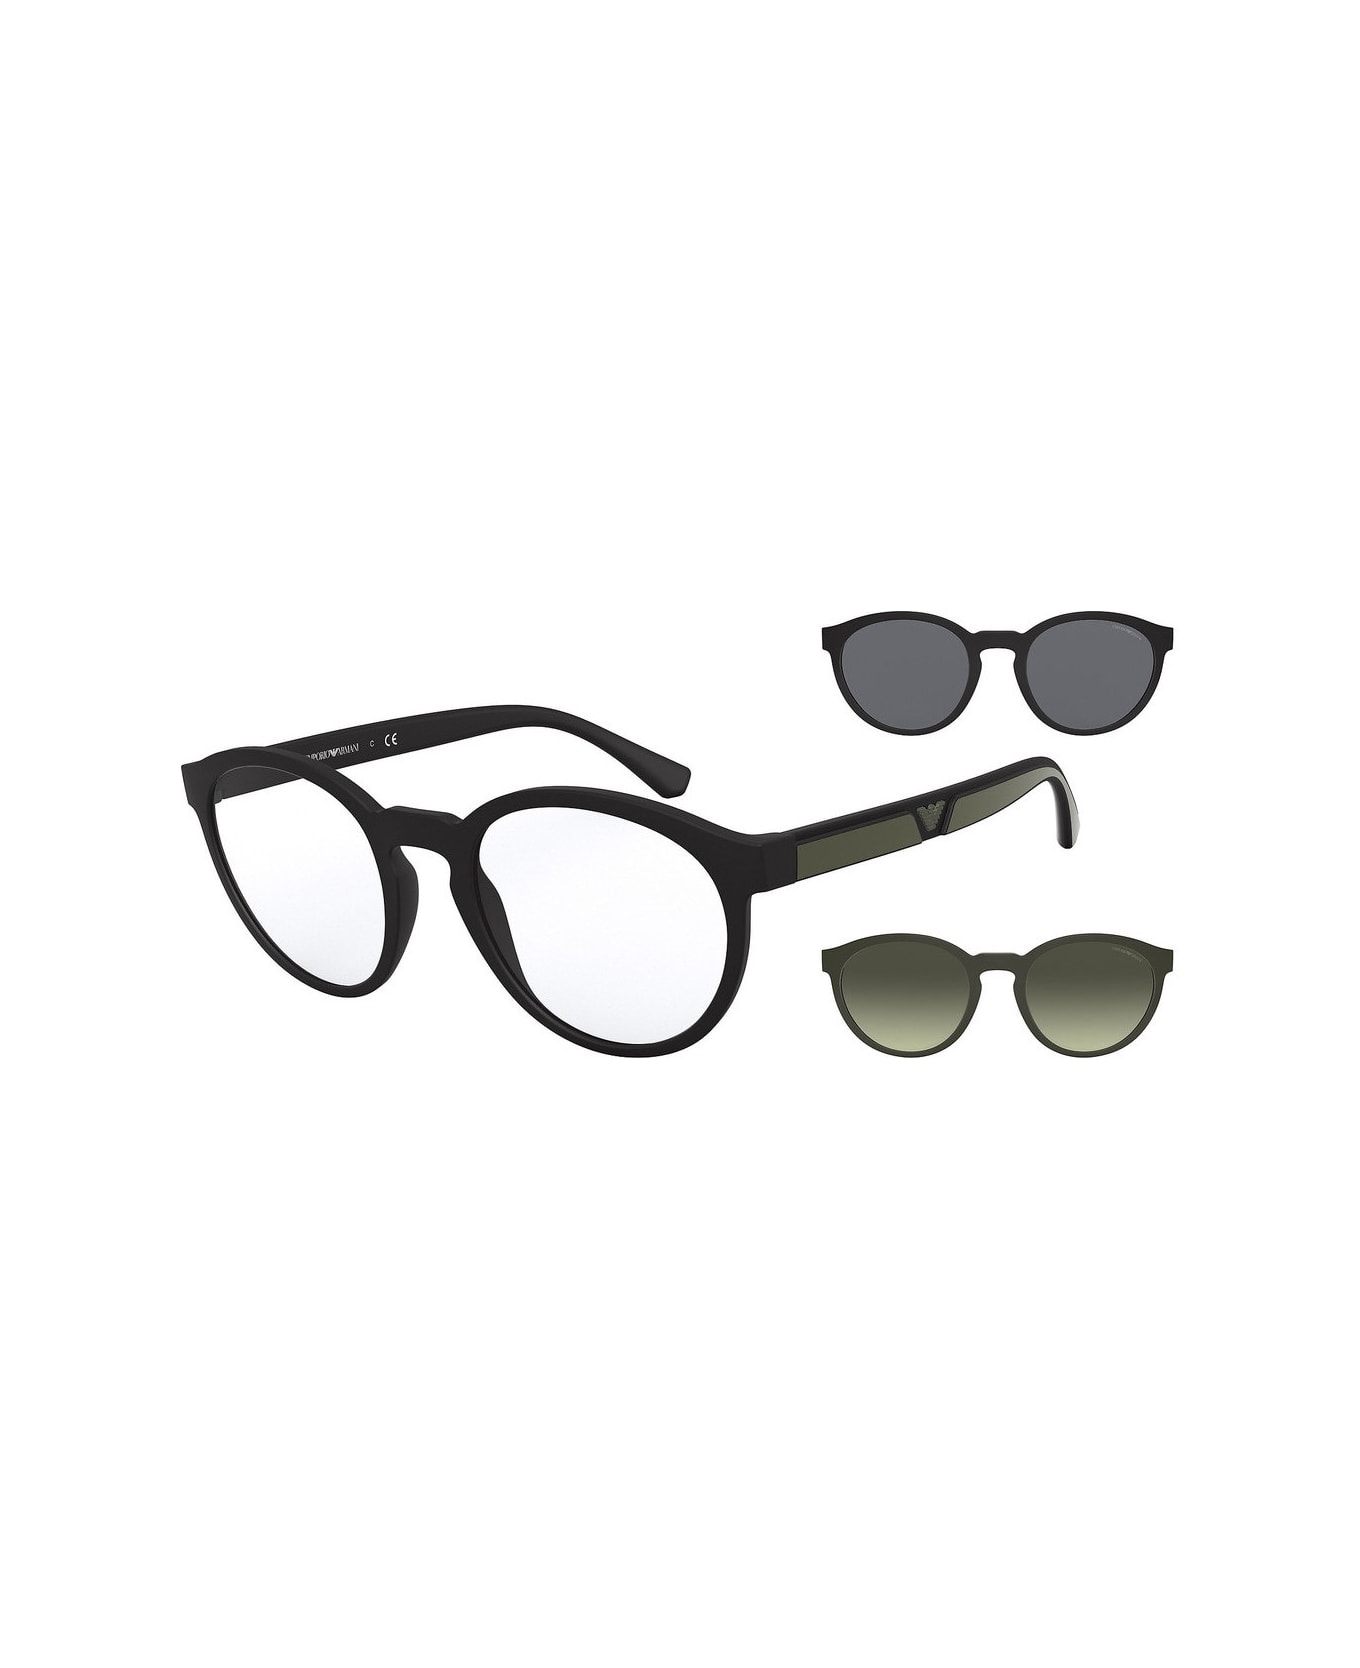 Emporio Armani EA4152 5042/1W Glasses - Nero aggiuntivo nero e verde アイウェア